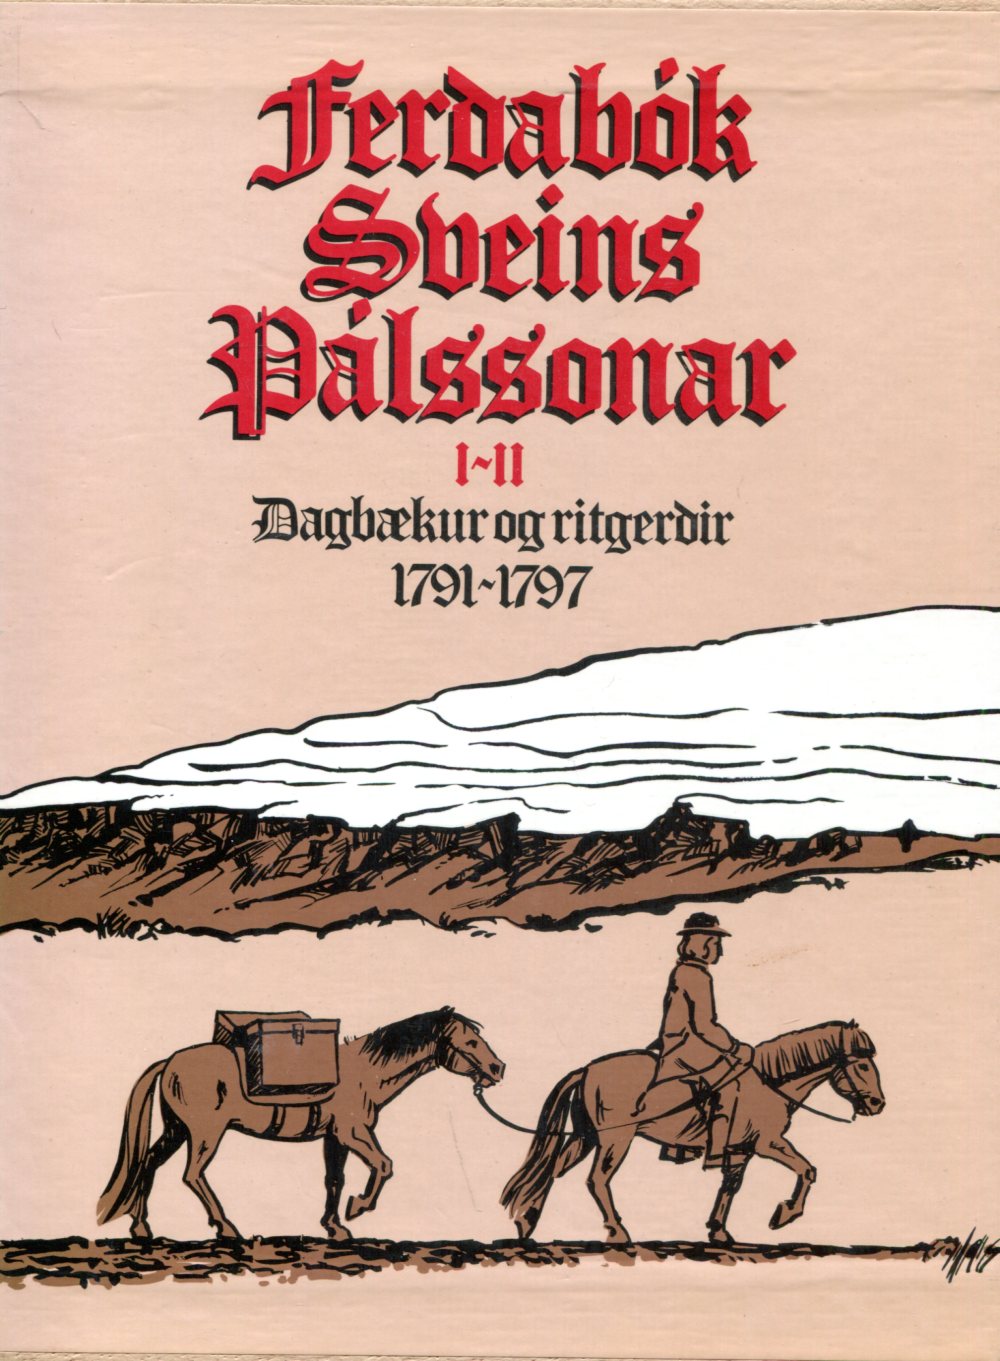 Ferðabók Sveins Pálssonar I og II bindi í öskju - dagbækur og ritgerðir 1791-1997 - Sveinn Pálsson - Örn og Örlygur 1983